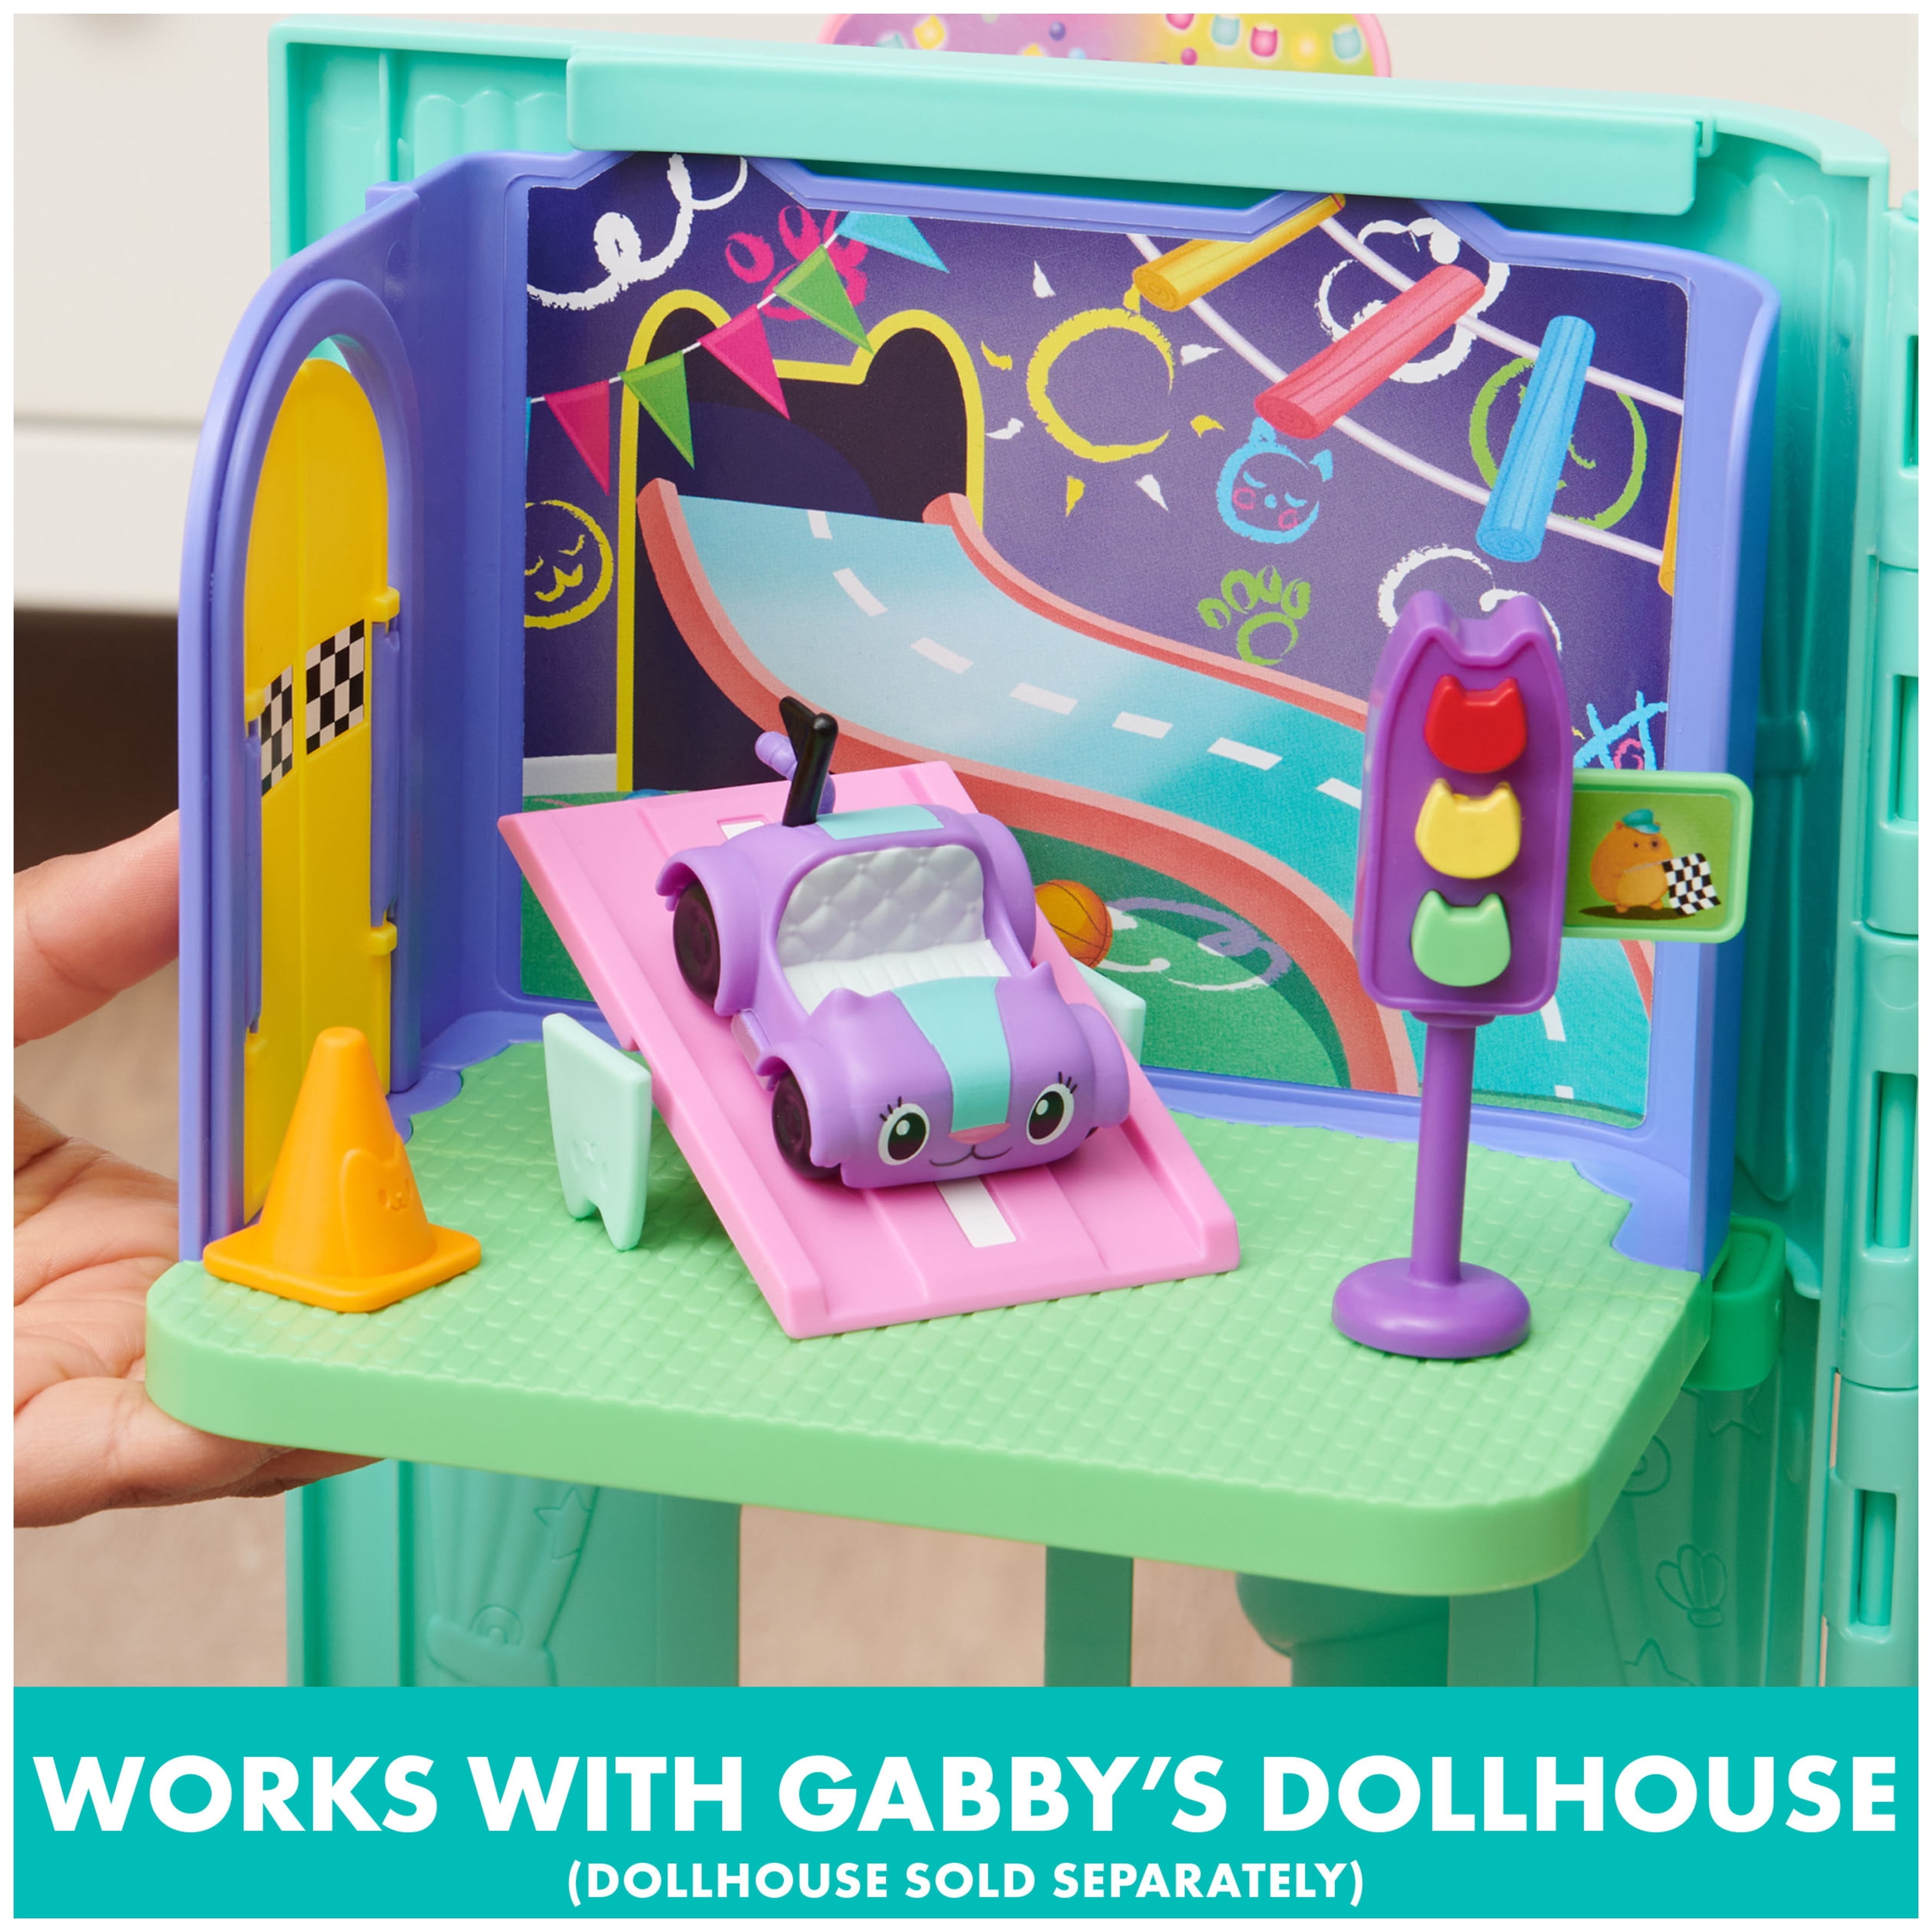 Gabby's Dollhouse - Ensemble de jeu de salle de bain Primp and